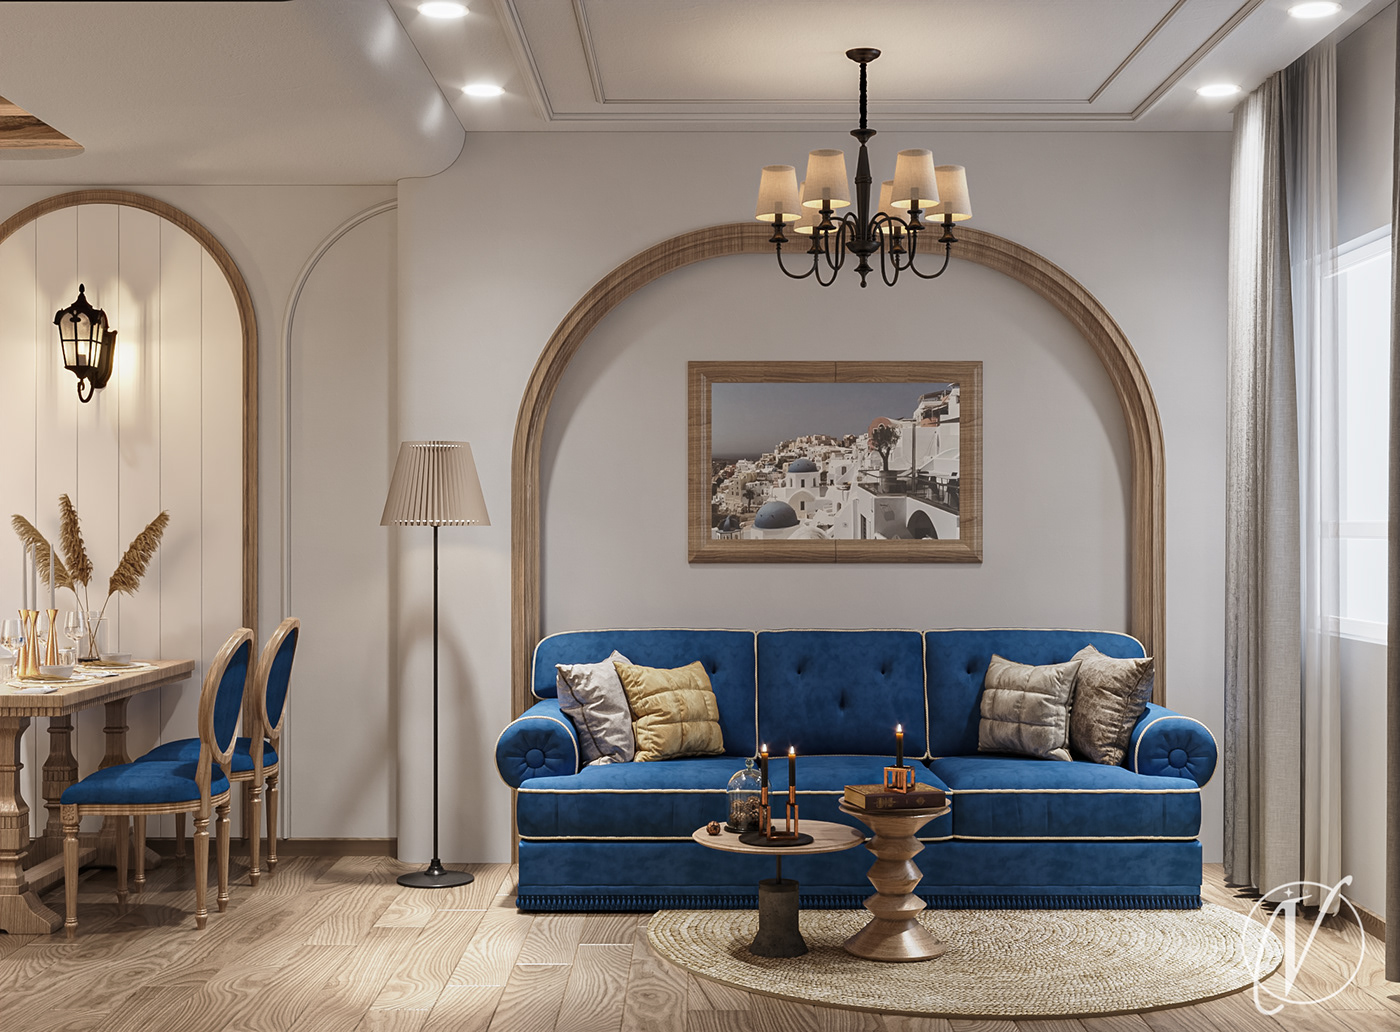 3ds max apartments concept corona render  graphic design  interior design  santorini Work  TRENDING up